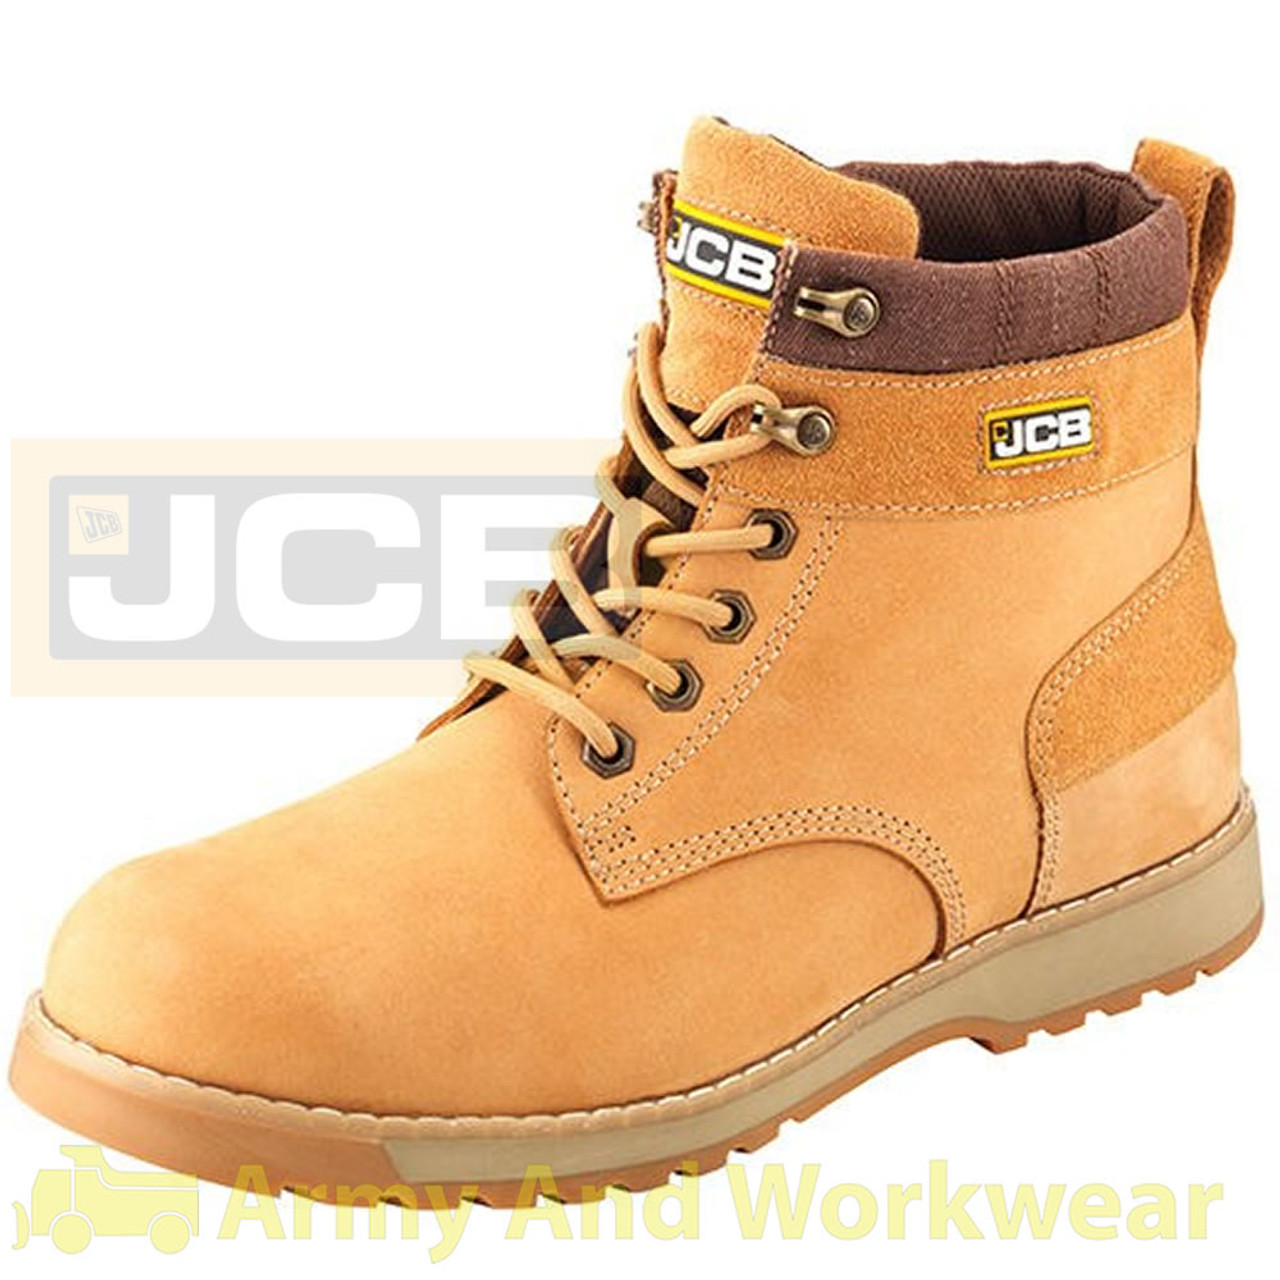 jcb dealer boots